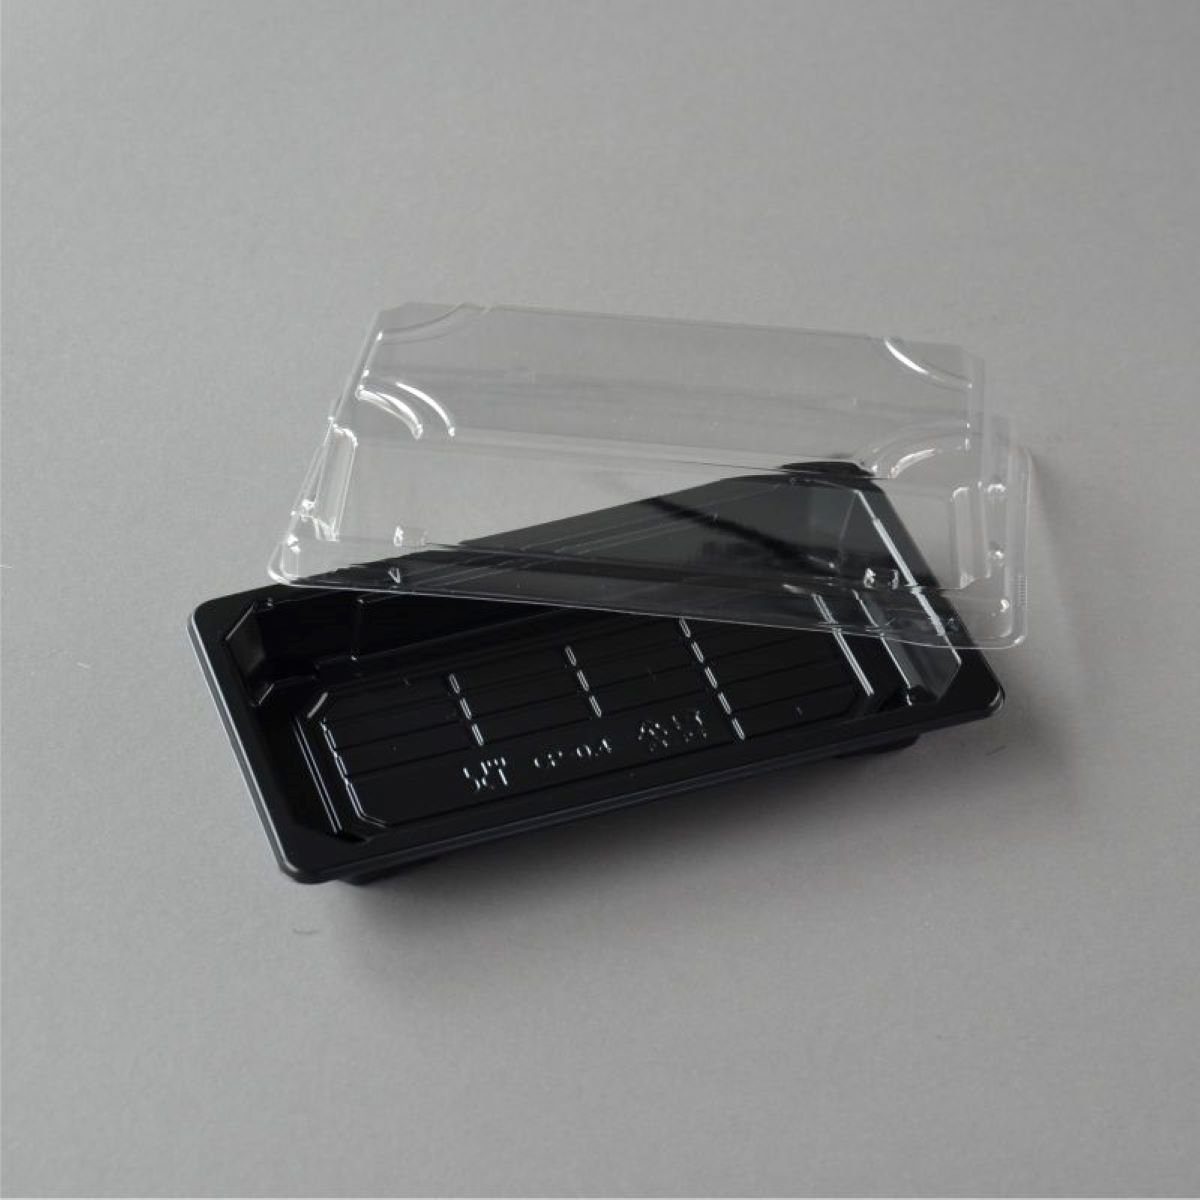 Stück Schalen 400 Tray OP mm), Box Verpackung Sushi Sushi Sushi (168×93×31 Deckel Boden, Einwegschale 0.4 wellenförmigen mit mit